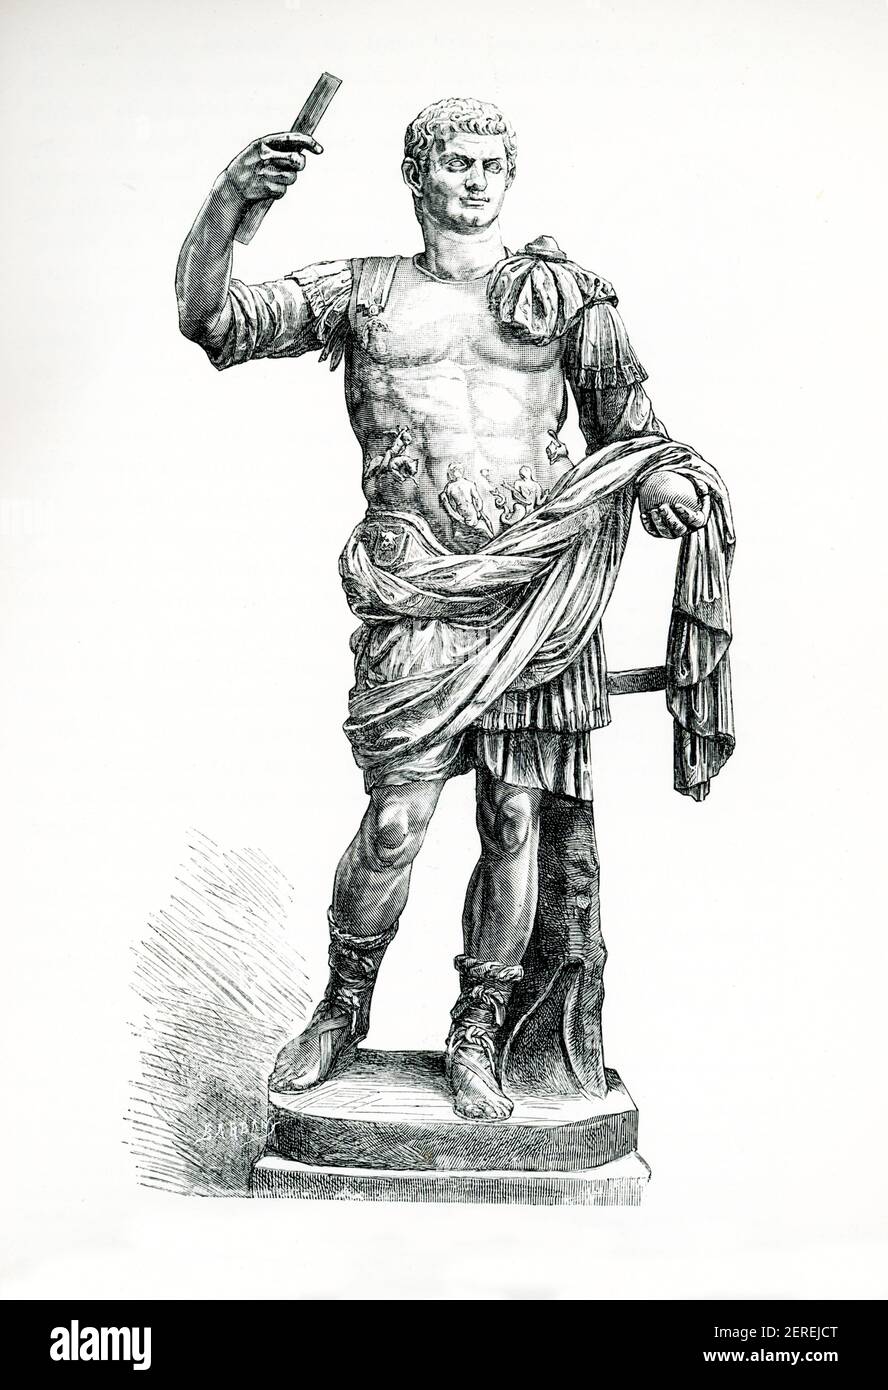 Diese 1880s Abbildungen zeigen die Statue des Domitian im Vatikan Braccio Novo Nr. 129. Domitian war römischer Kaiser von 81 bis 96. Er war der Sohn von Vespasian und der jüngere Bruder von Titus, seine beiden Vorgänger auf dem Thron, und das letzte Mitglied der Flavian Dynastie. Während seiner Regierungszeit stellte ihn die autoritäre Natur seiner Herrschaft in eine scharfe Uneinigkeit mit dem Senat, dessen Befugnisse er drastisch beschnitten hatte. Stockfoto